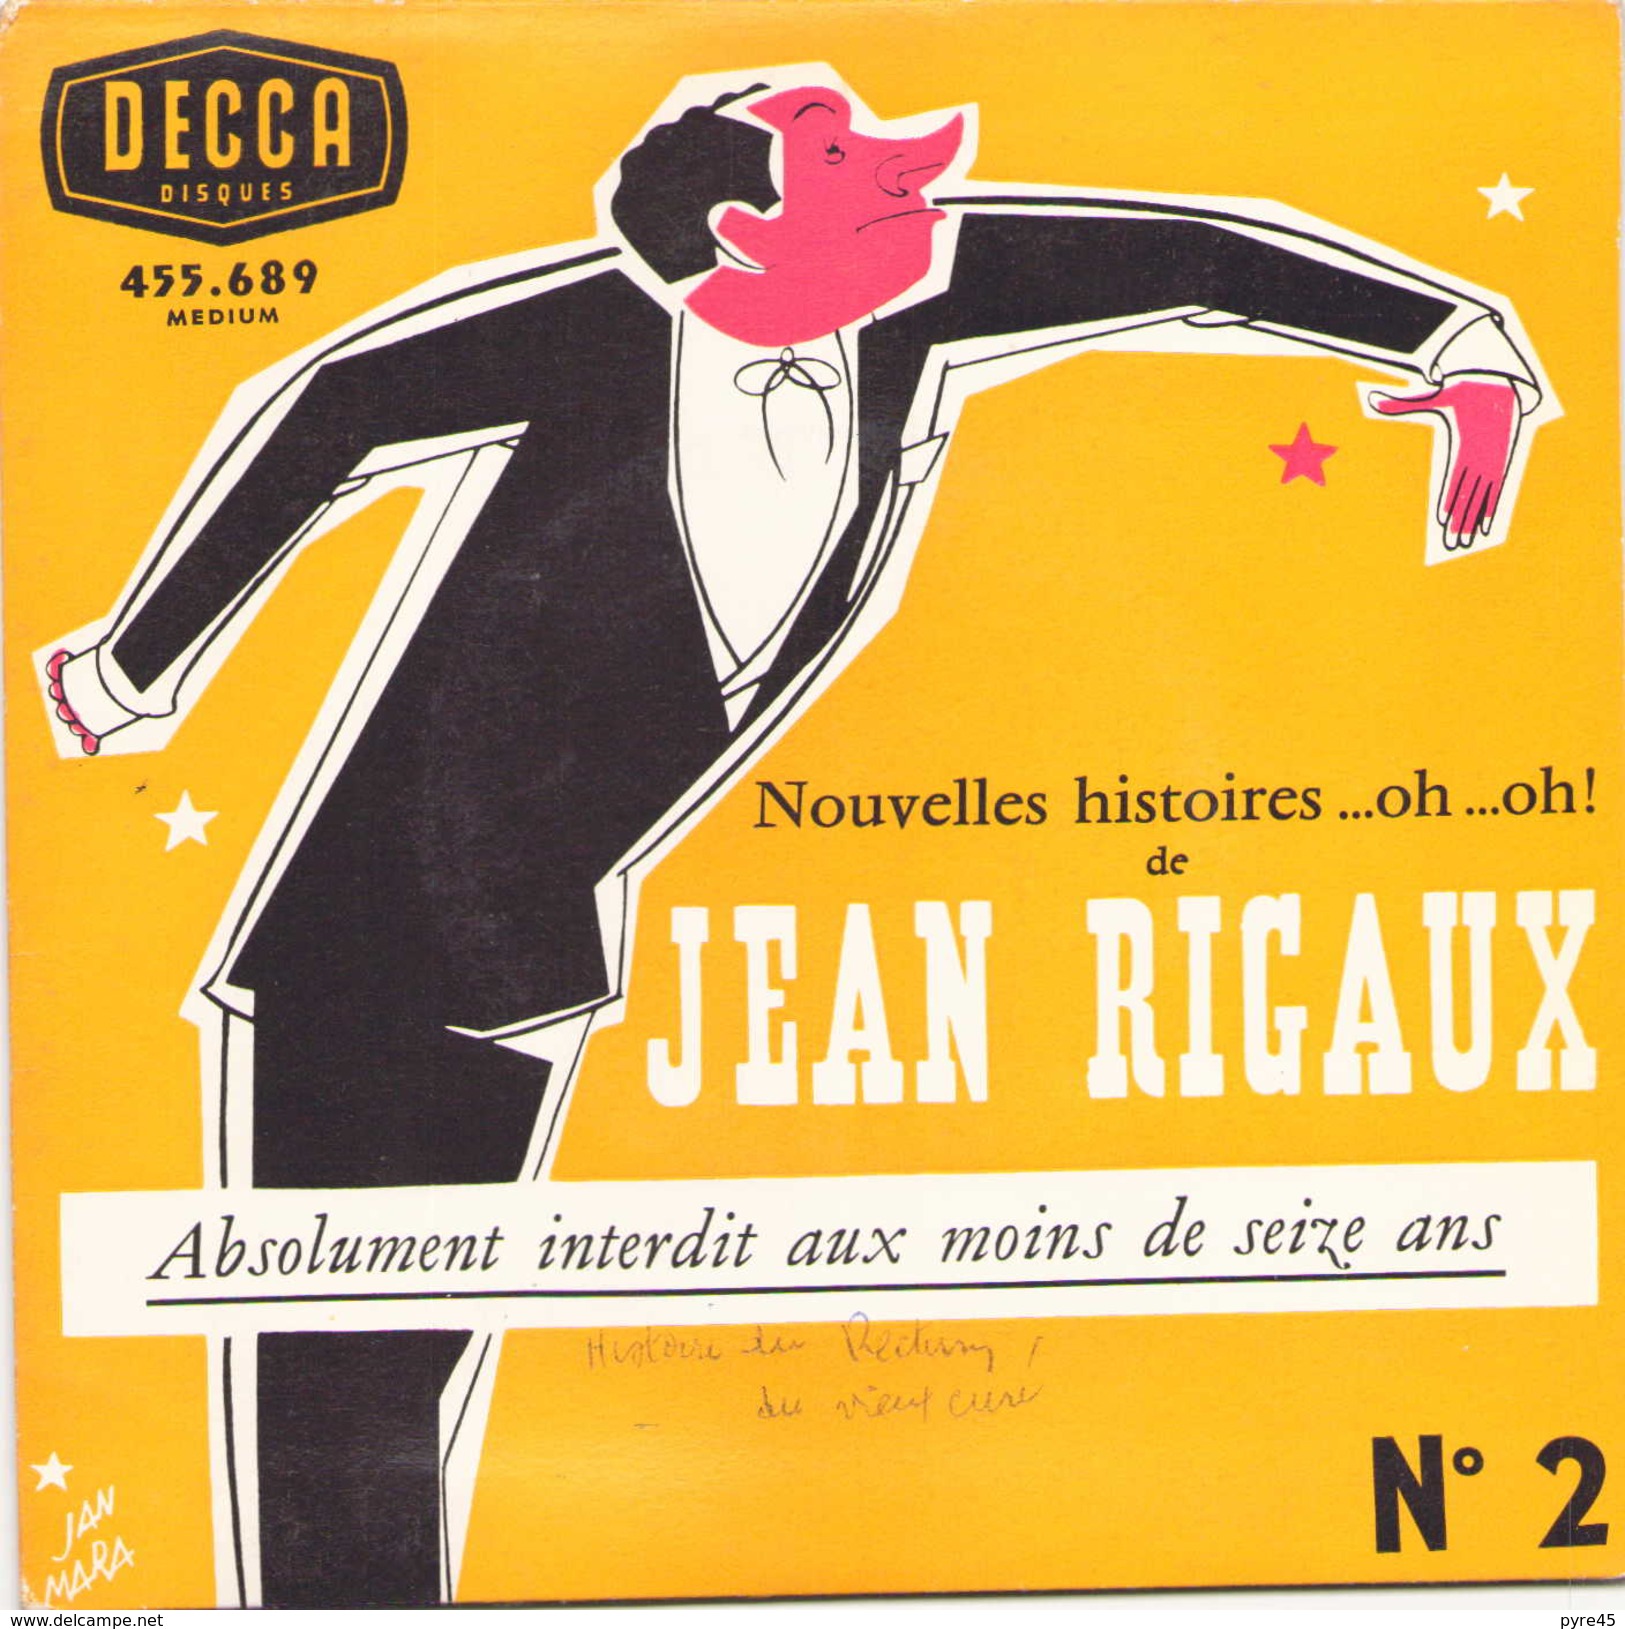 45 TOURS JEAN RIGAUX DECCA 455689 ABSOLUMENT INTERDIT AUX MOINS DE SEIZE ANS - Humor, Cabaret